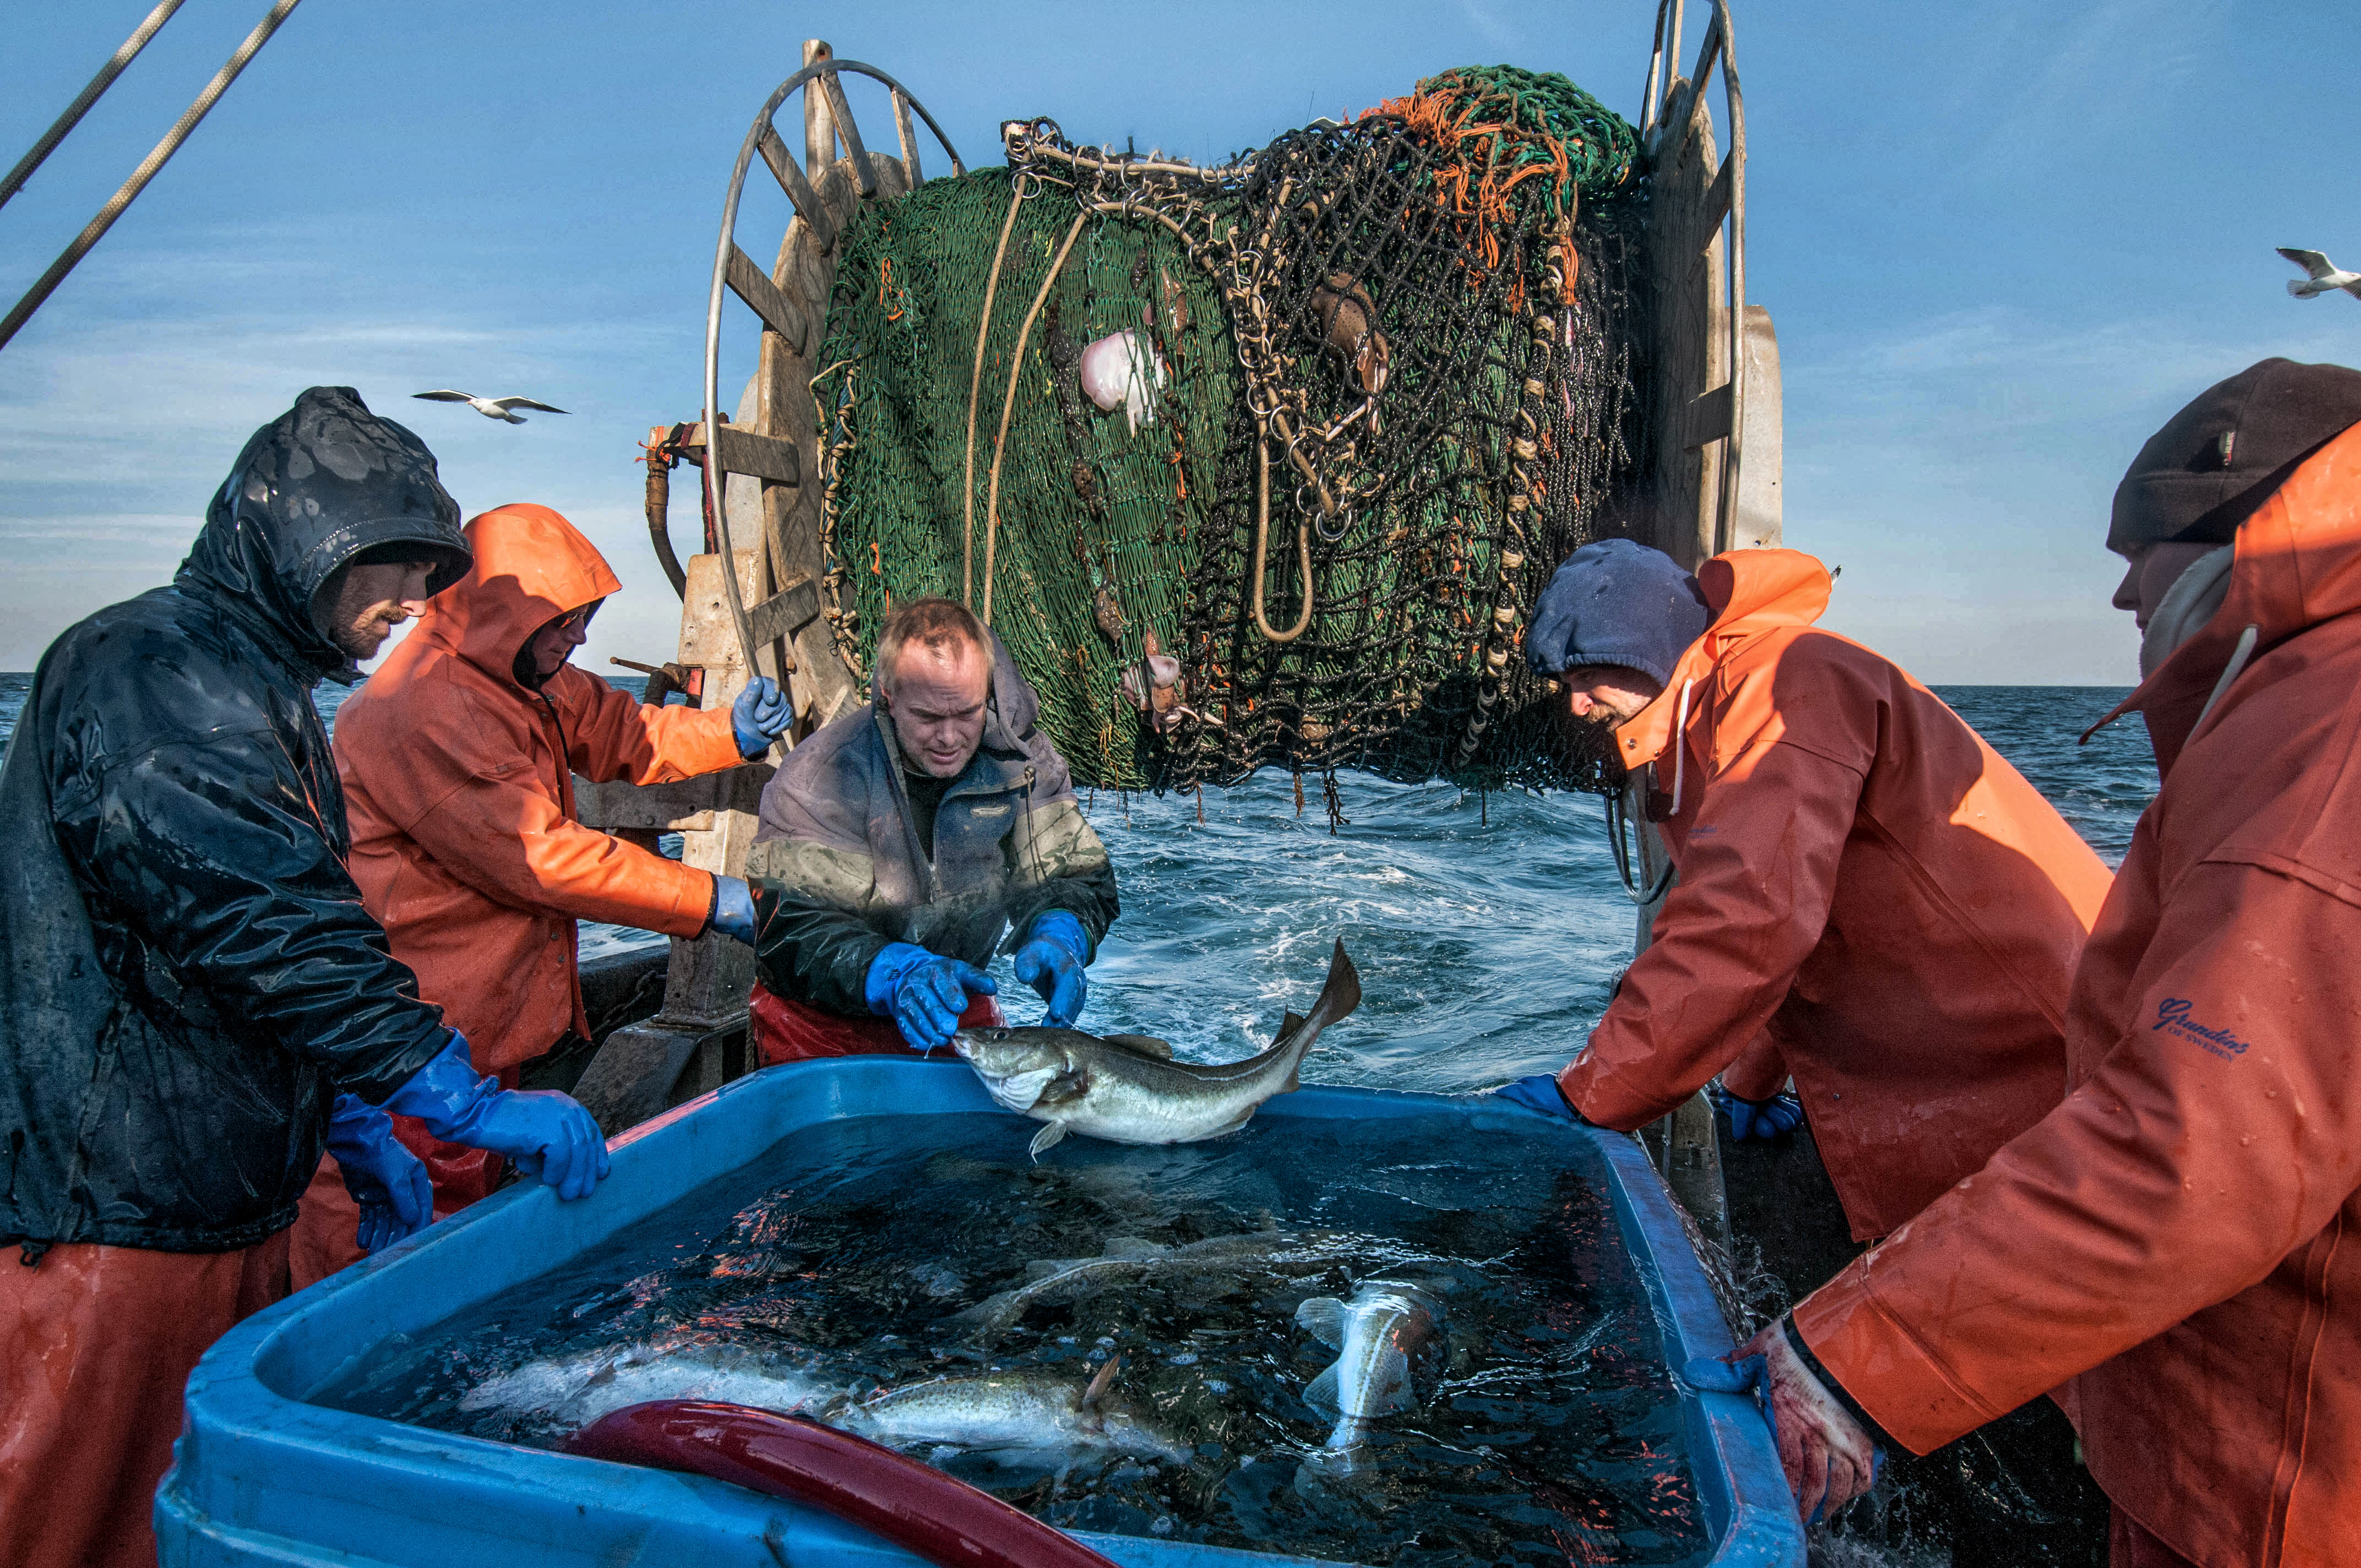 上尉凯文•诺顿中心Scituate-based商业渔船“洋基玫瑰”把刚抓大西洋鳕鱼进一个蓄水池,生物学家杰夫•尼伯恩(左一)甲板水手格雷格·库克,大自然保护协会的克里斯·麦奎尔和SMAST / UMass-Dartmouth研究员道格泽(右)在自己的研究之旅在诺顿的船。照片由约翰·克拉克Russ大自然保护协会